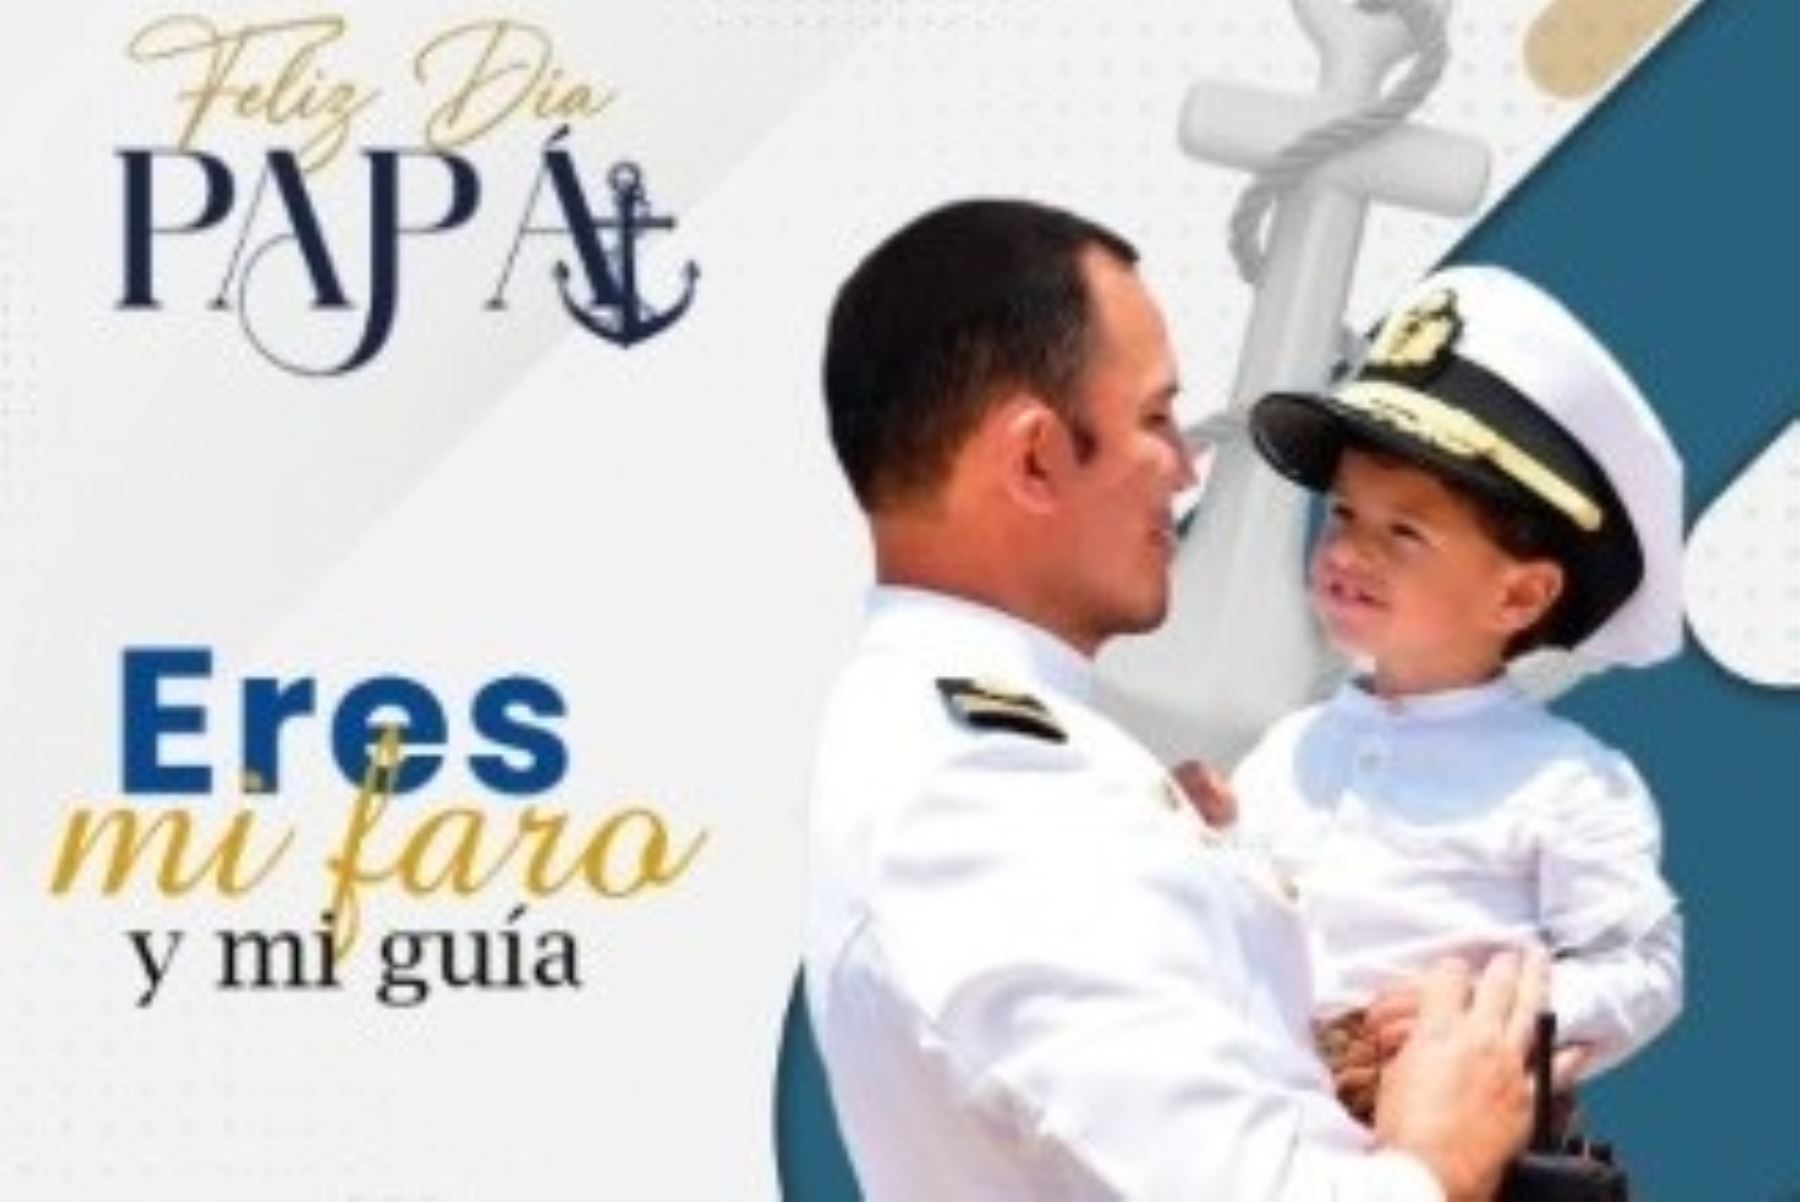 La Marina de Guerra del Perú saluda a los padres por su día